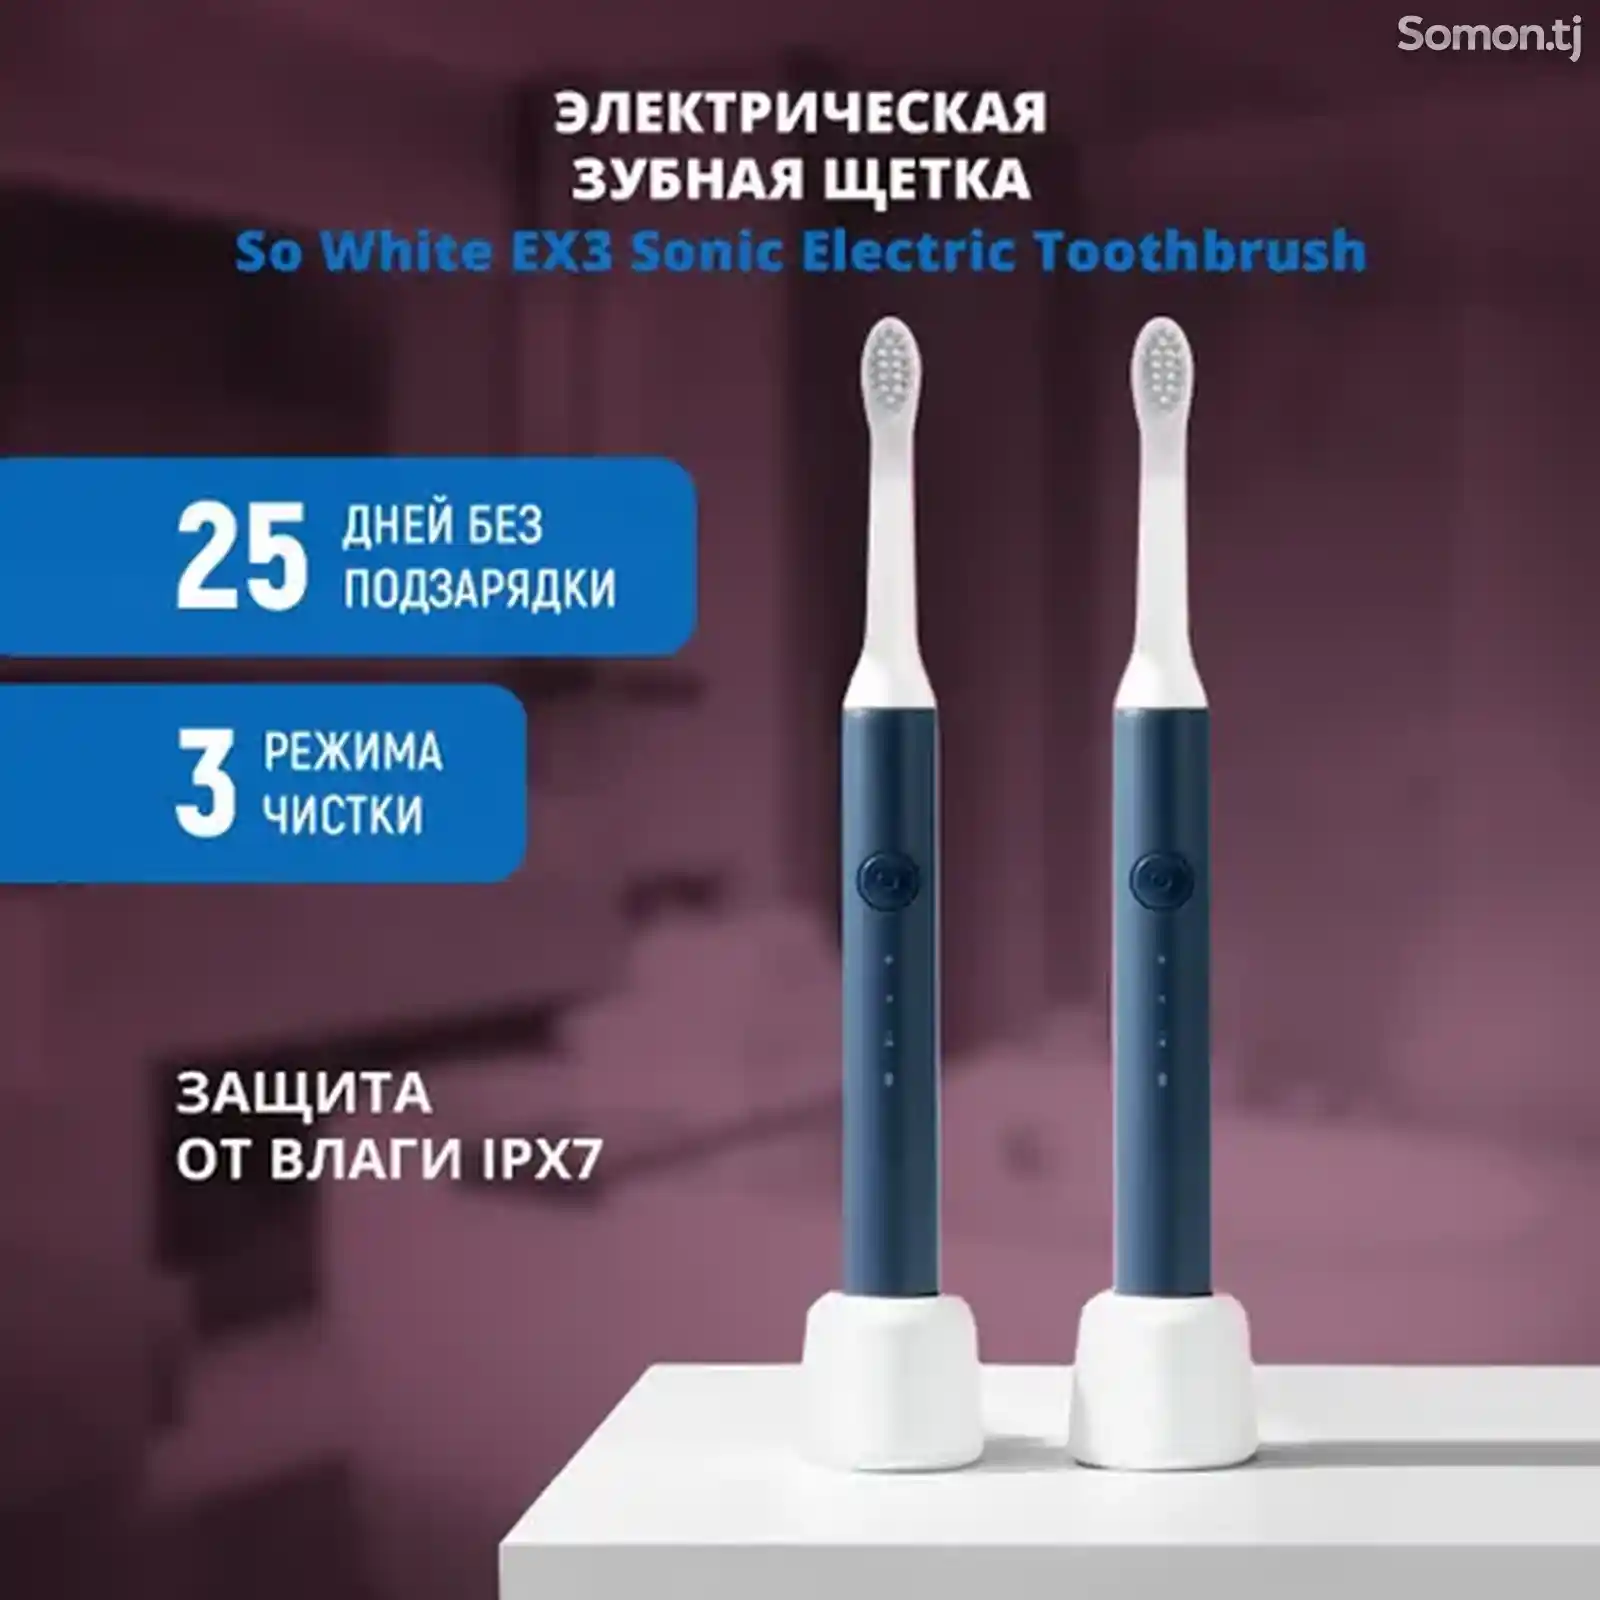 Зубная щетка электрическая EX3 Sonic Electric Toothbrush-1